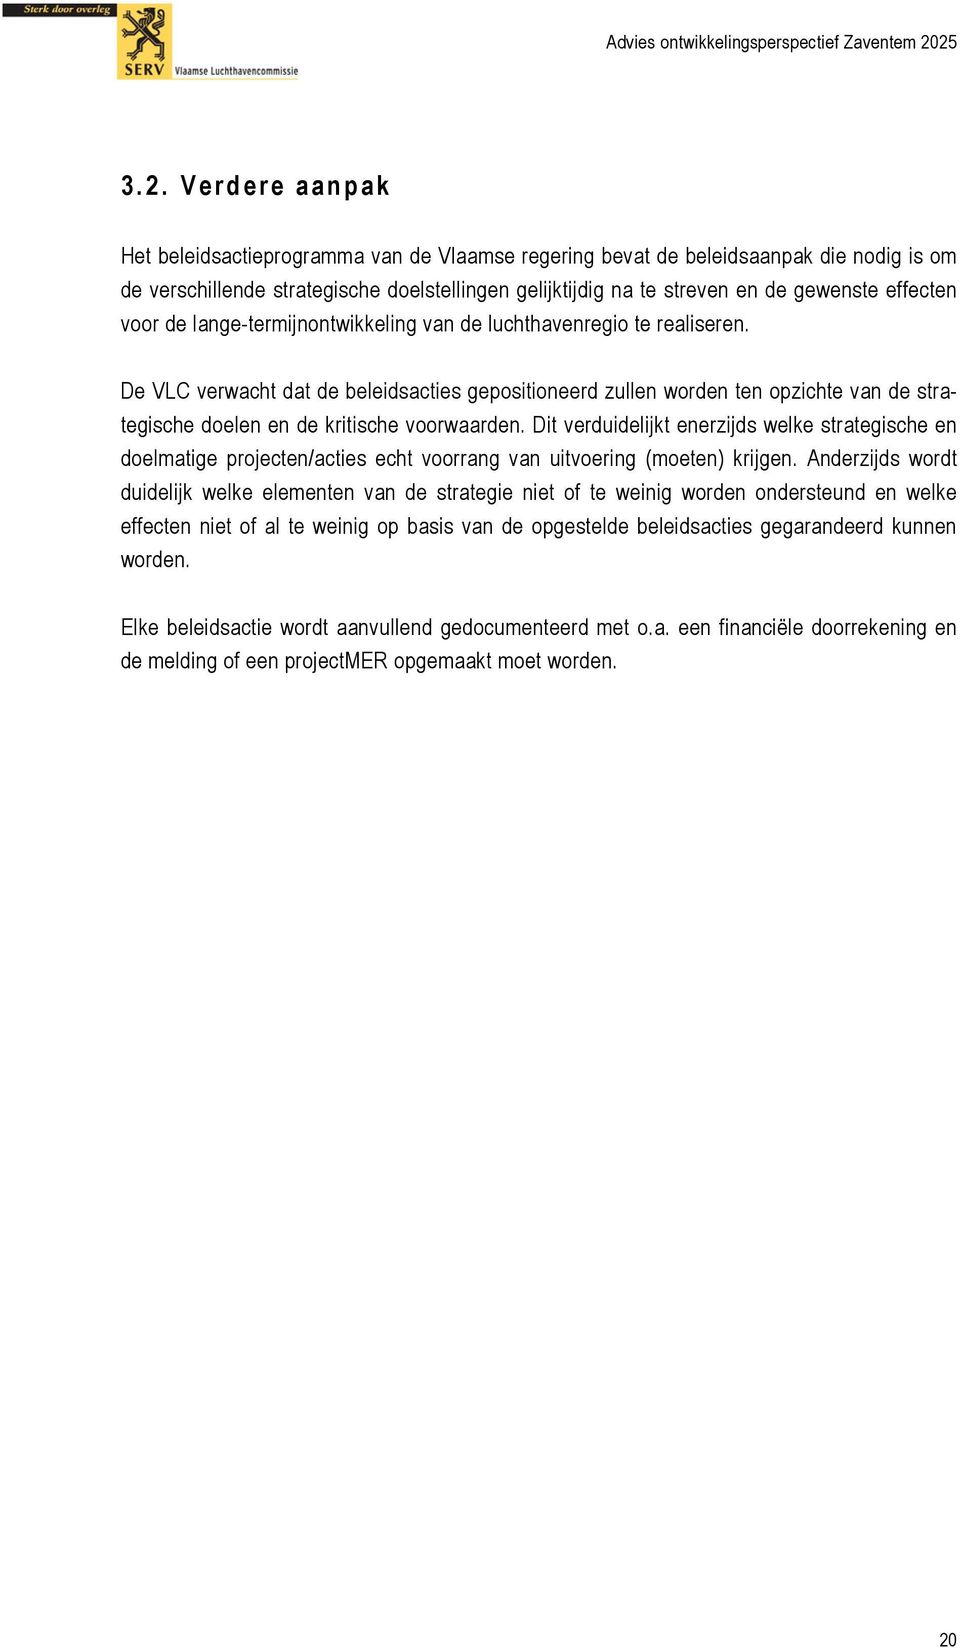 De VLC verwacht dat de beleidsacties gepositioneerd zullen worden ten opzichte van de strategische doelen en de kritische voorwaarden.